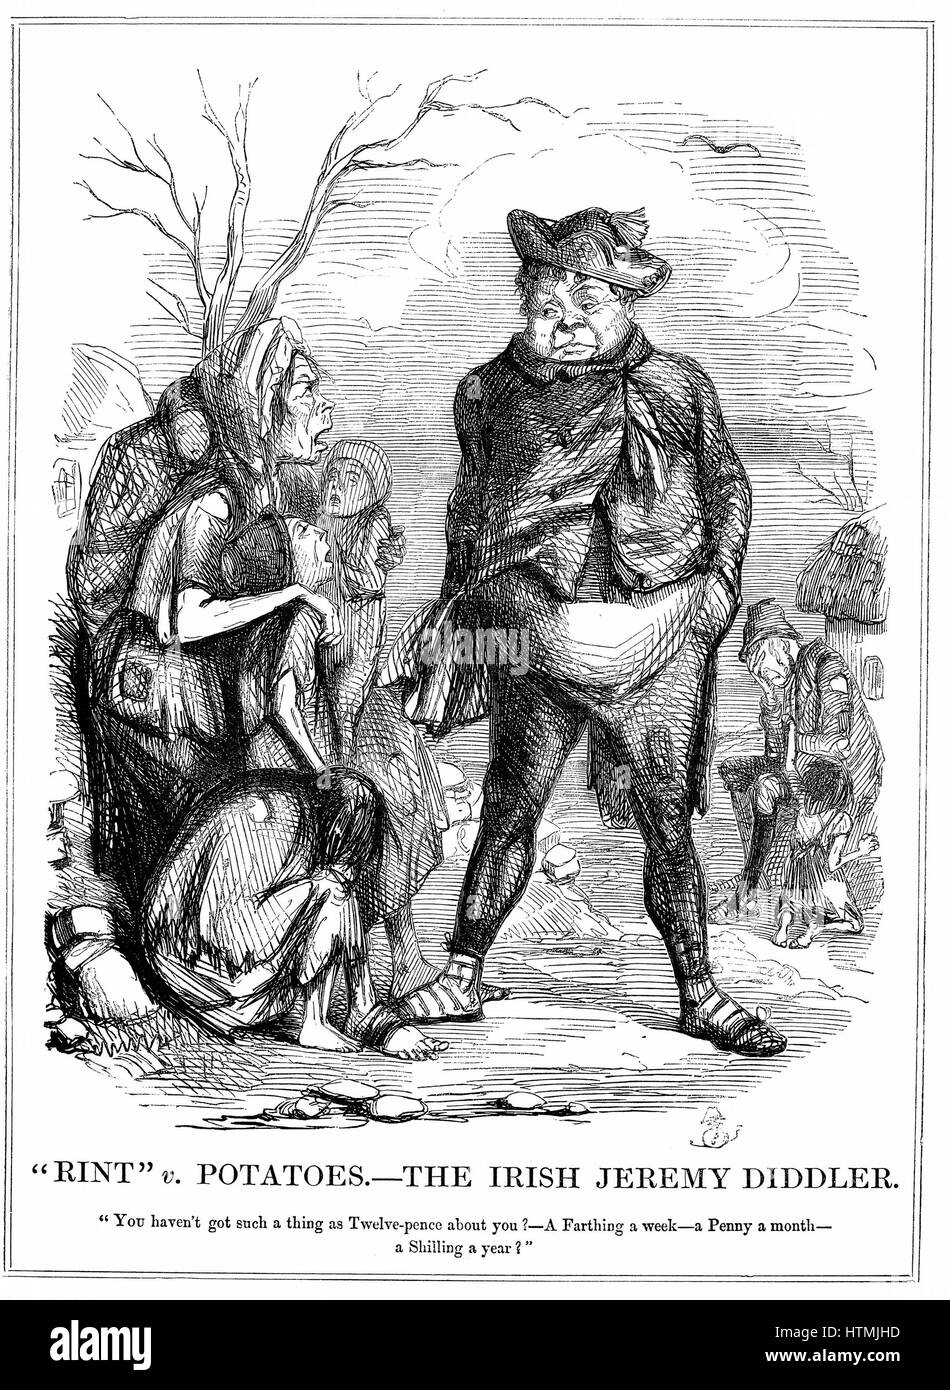 "Rint' v. Kartoffeln - die irische Jeremy Diddler. Daniel O'Connell (1775-1847) irische Politiker weiterhin Aufhebung mieten um Selbstverwaltungbewegung zu finanzieren, während irische Armen hungern zu sammeln. Cartoon aus "Punch", 15. November 1845. Holzstich Stockfoto